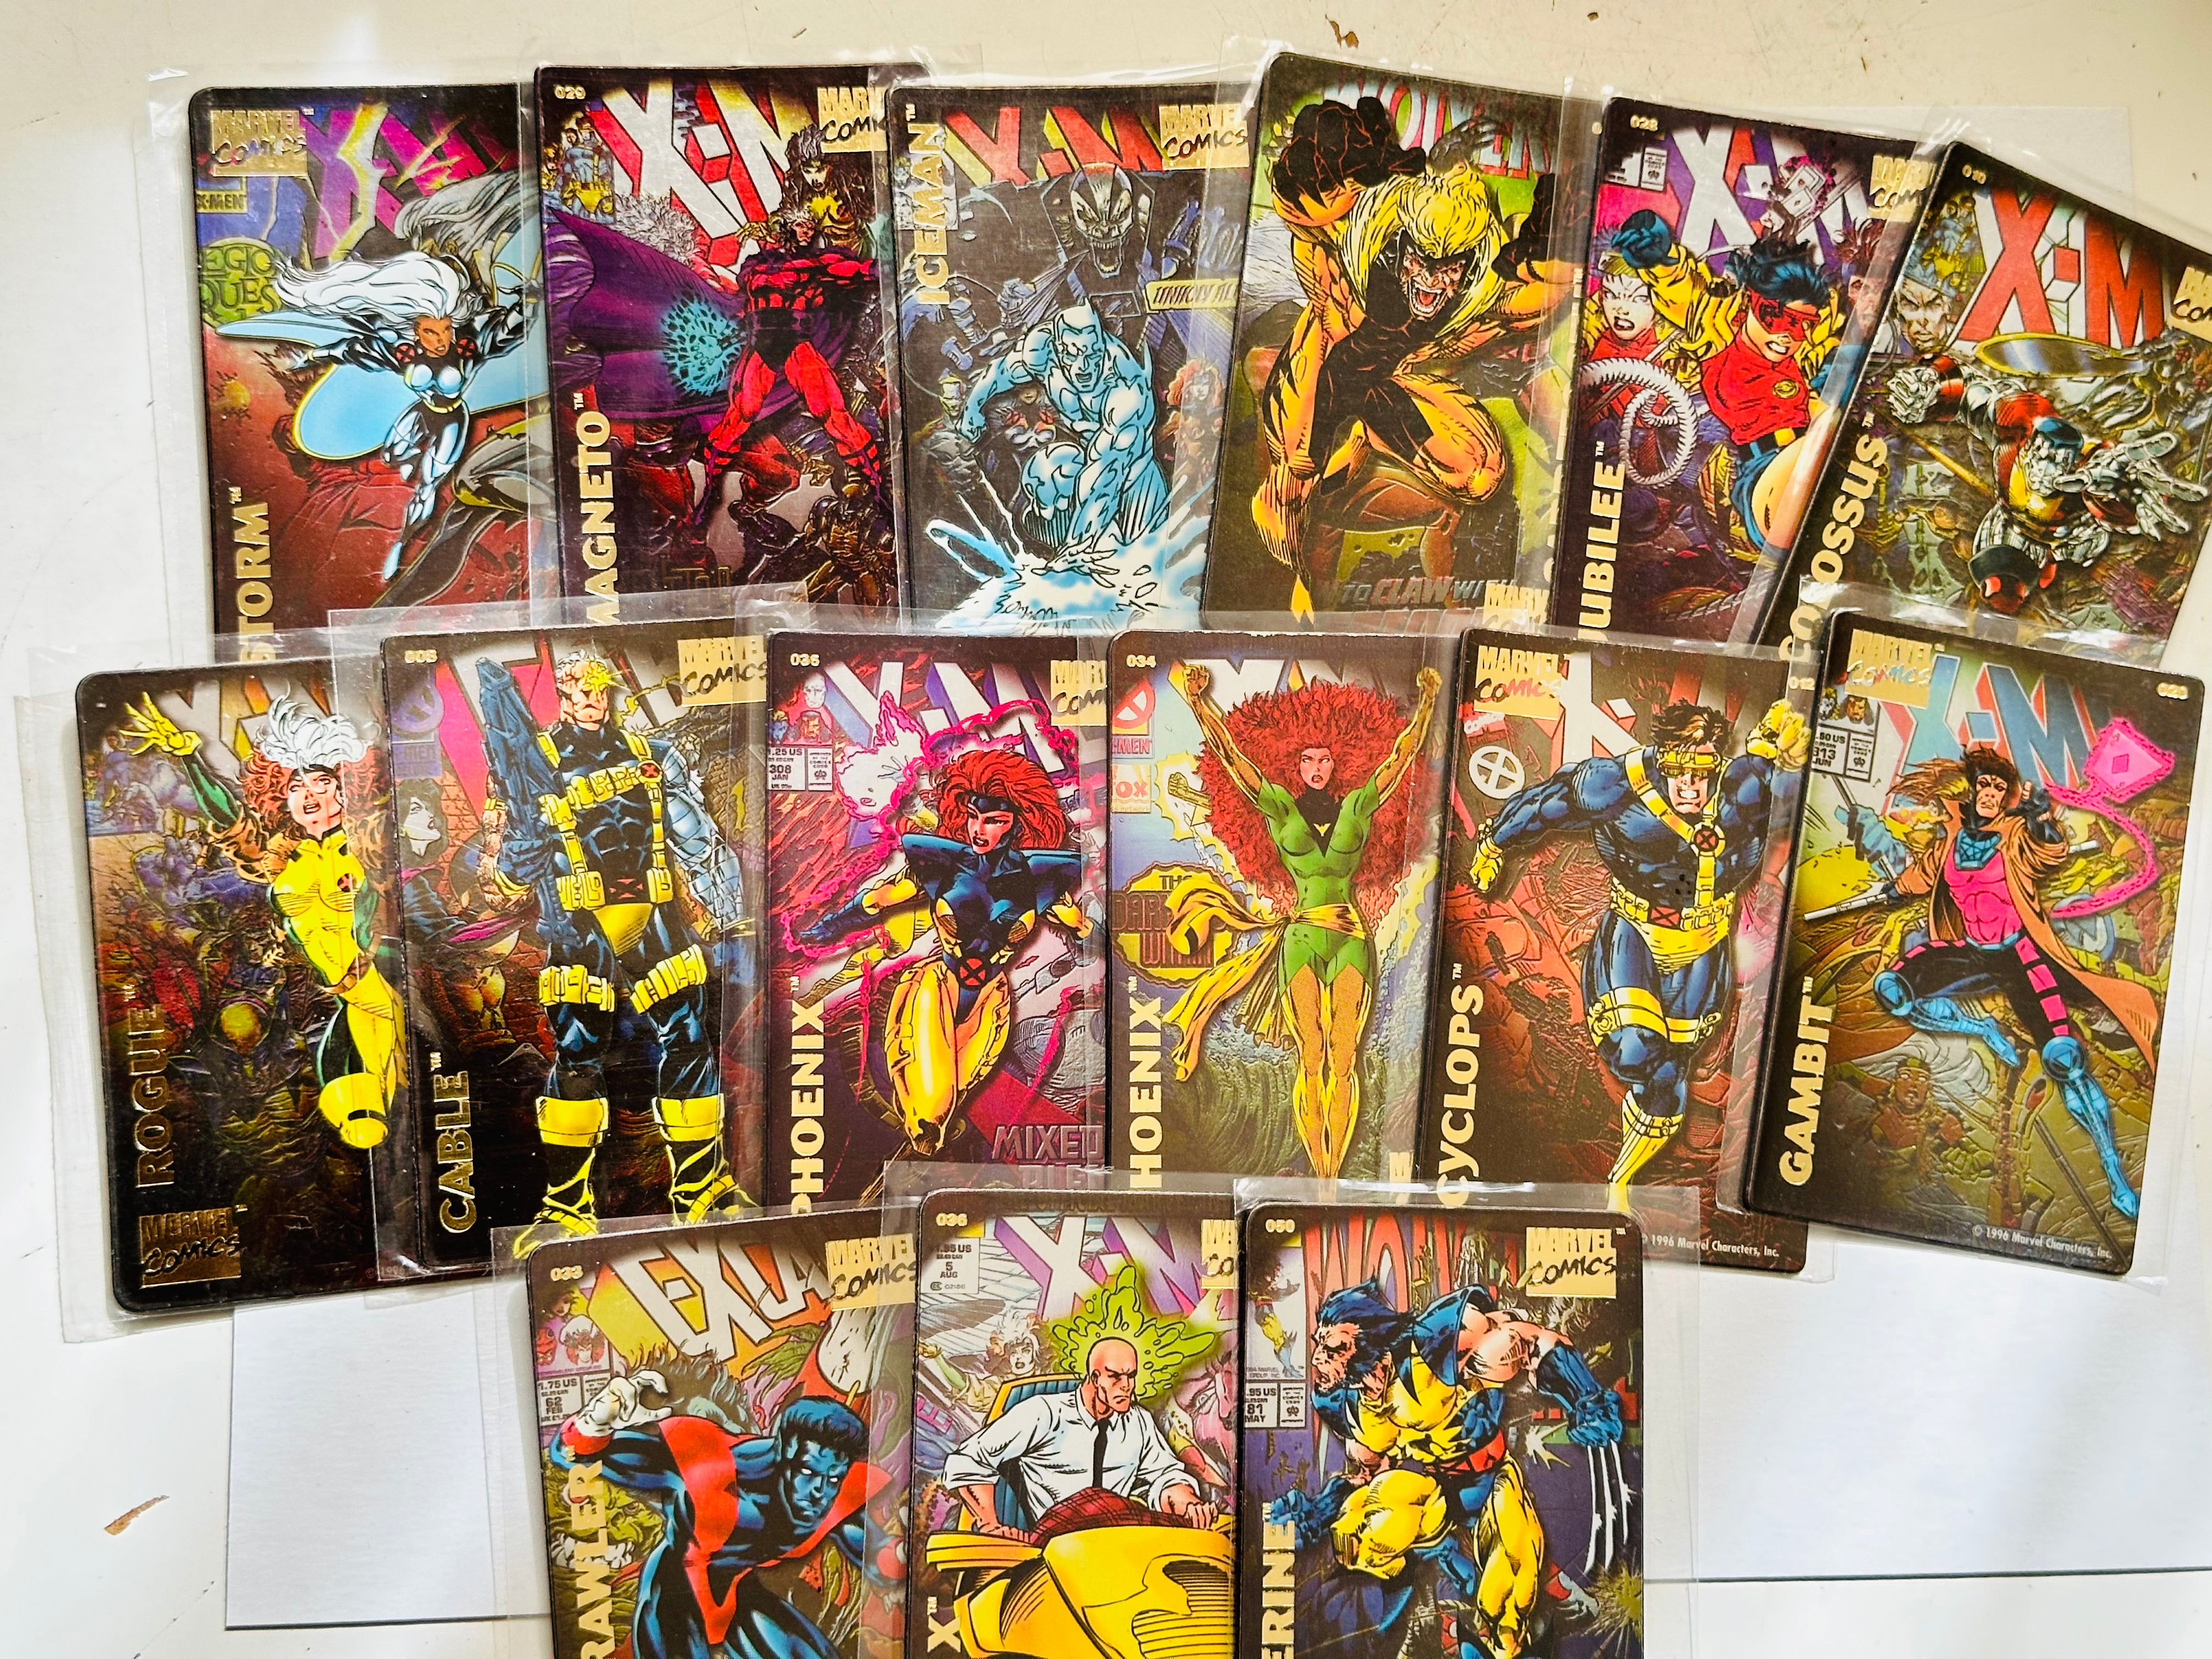 Marvel X-Men magnet cards 15 count lot deal 1996